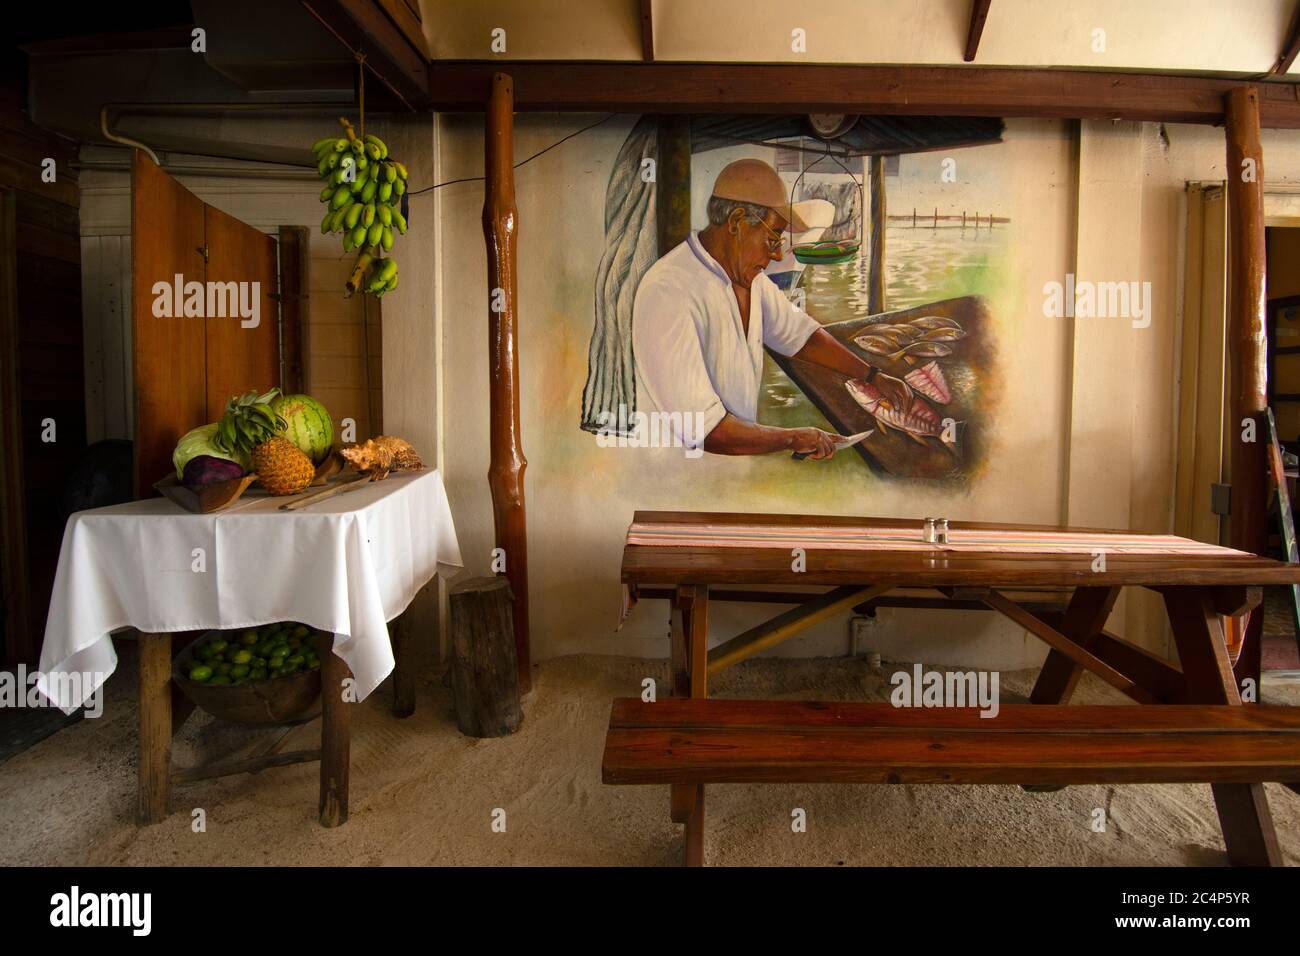 Table aux fruits et peinture à l'atmosphère typiquement bélizienne à l'intérieur du restaurant El Fogon, San Pedro, Ambergris Caye, Belize Banque D'Images